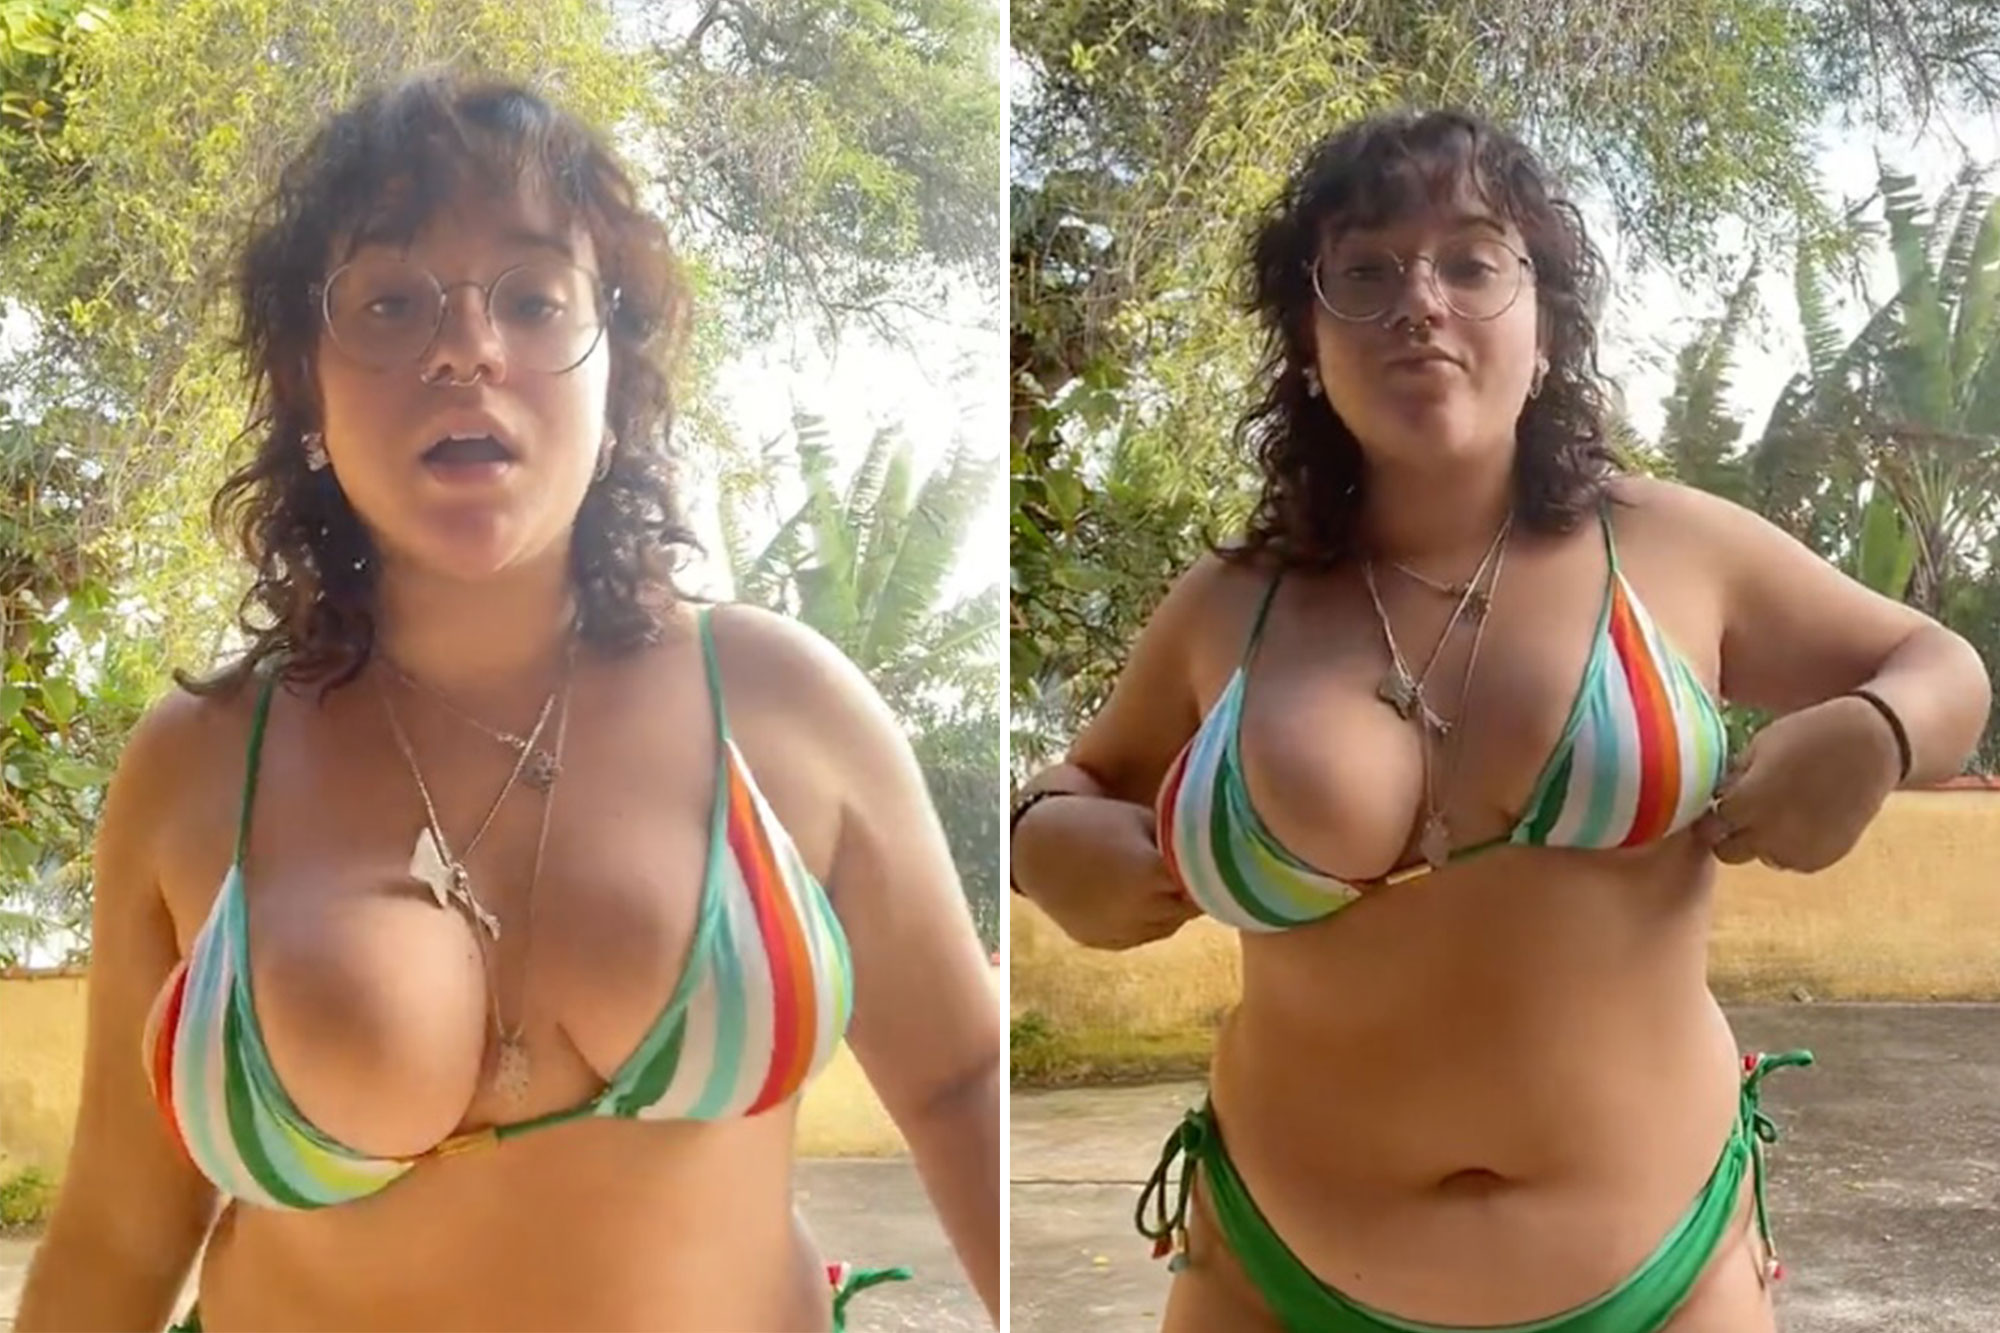 alba bueno recommends huge amateur boobs pics pic